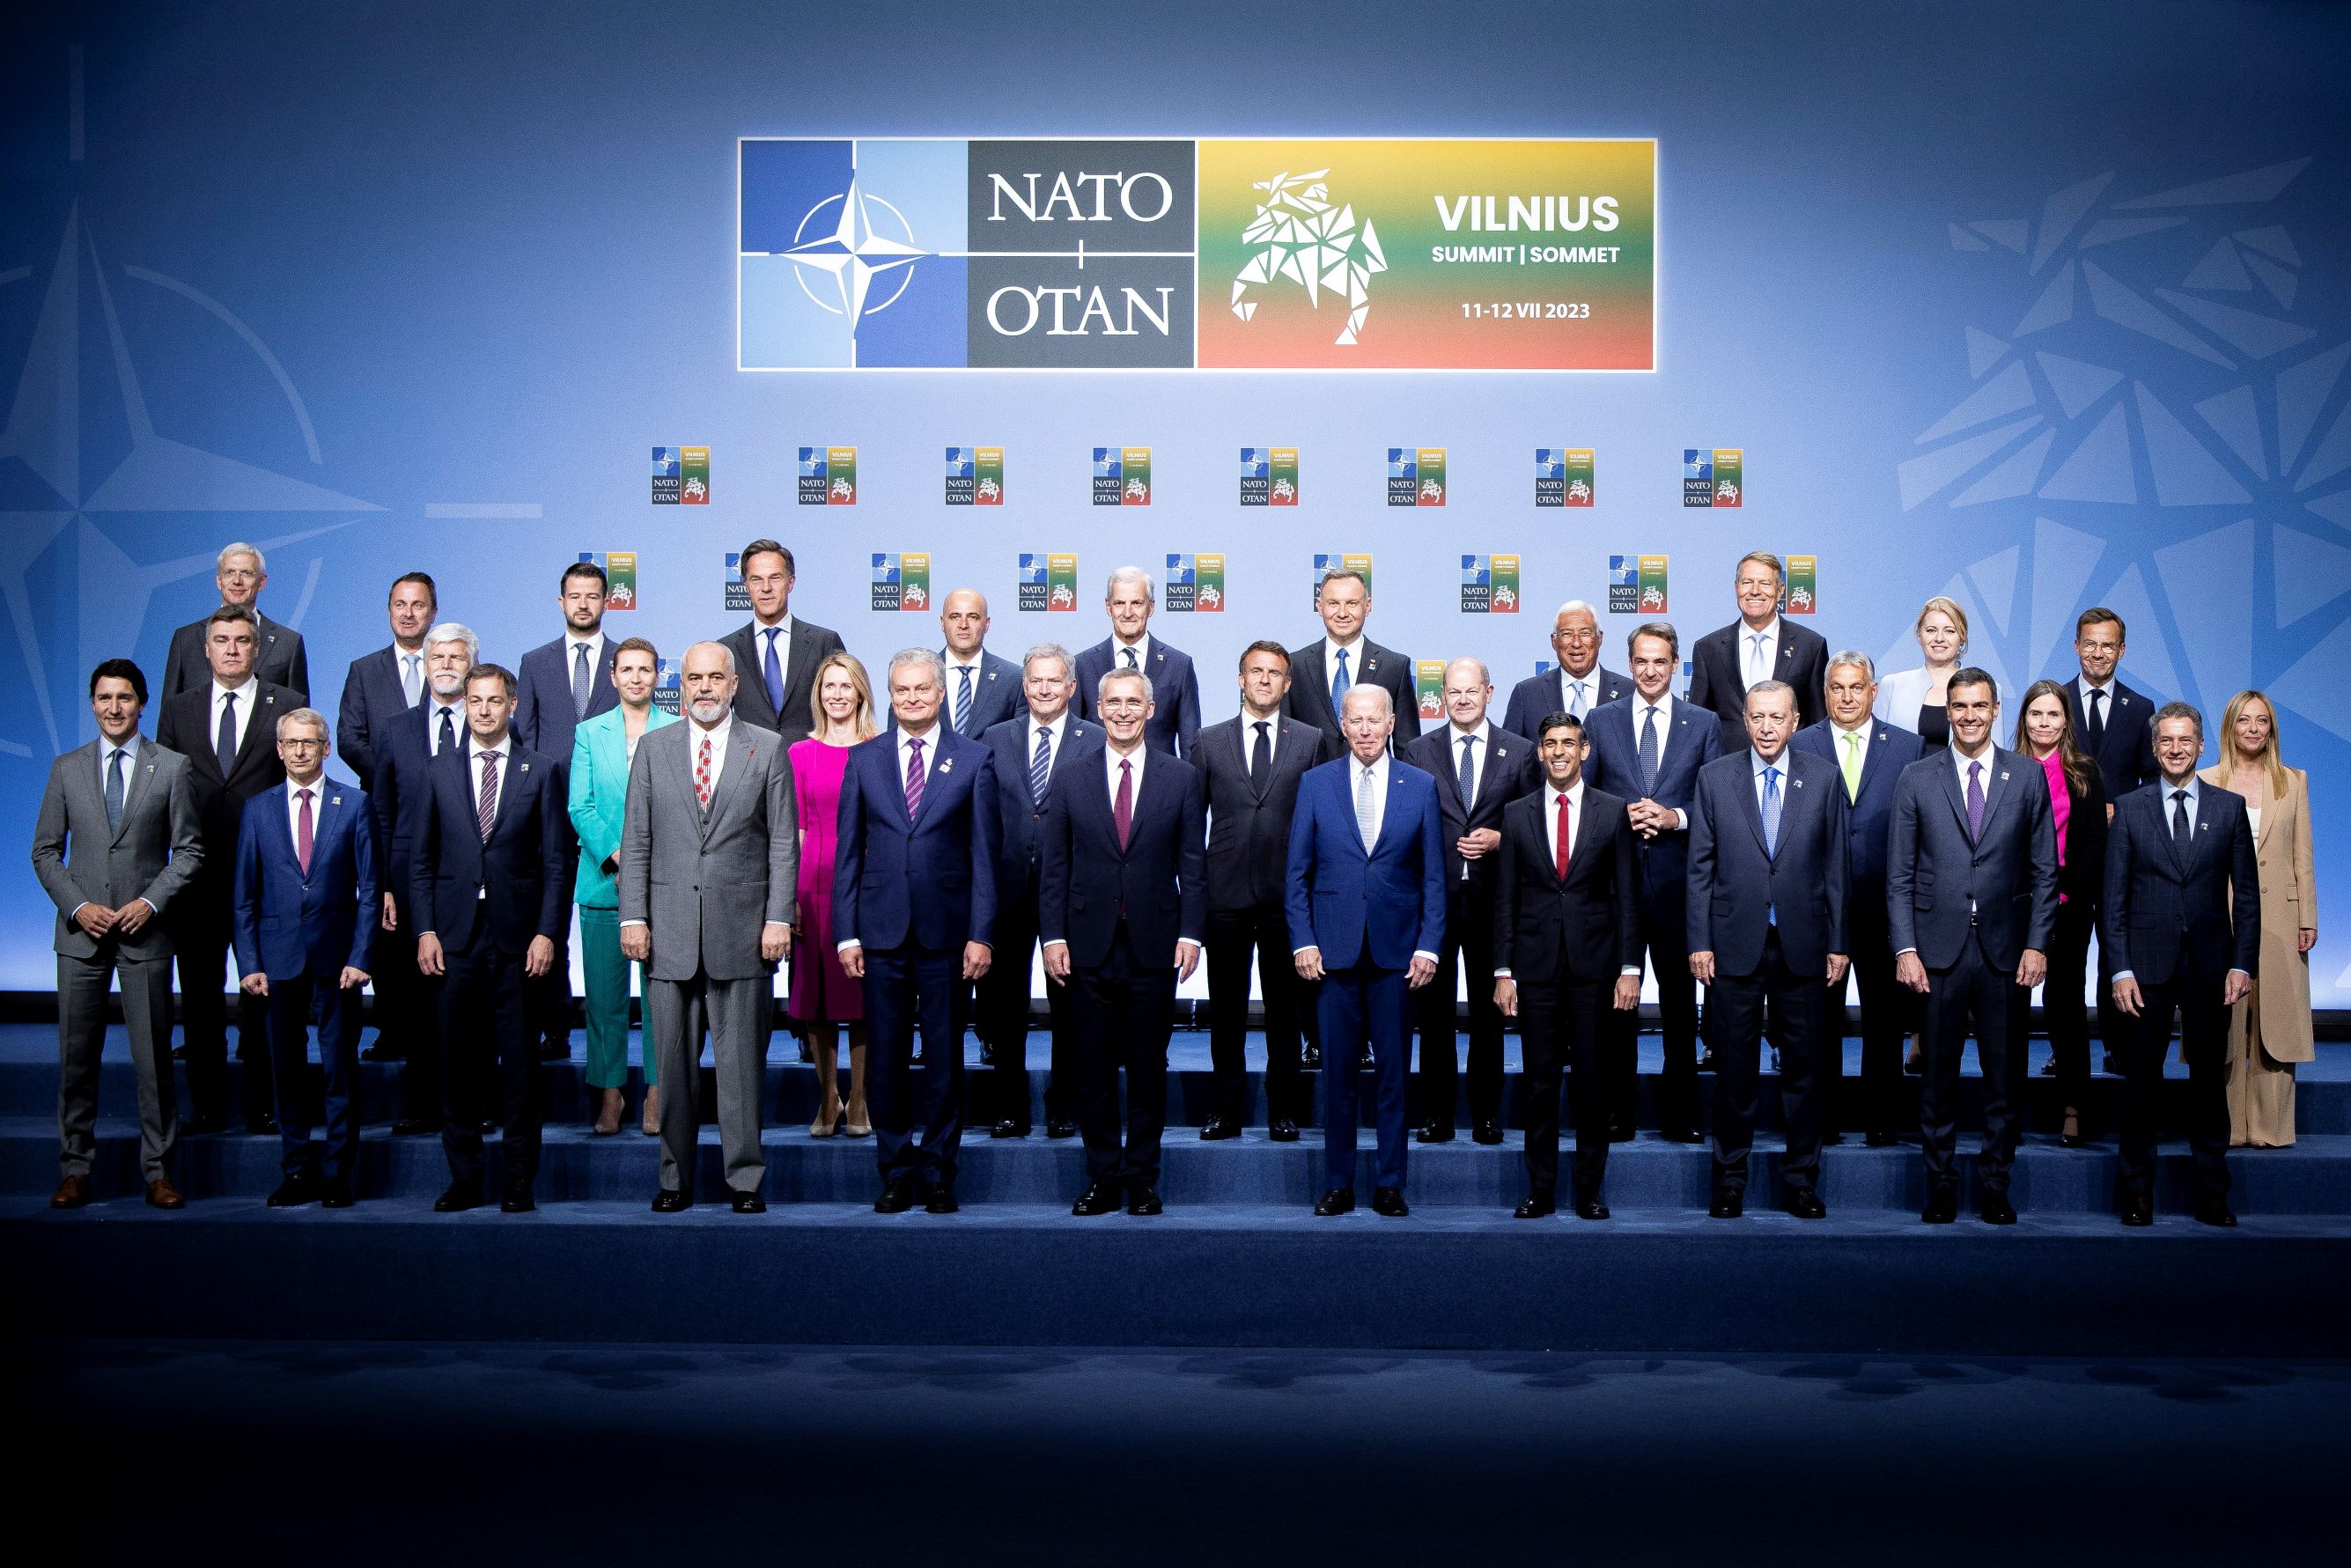 A Miniszterelnöki Sajtóiroda által közreadott csoportkép a NATO csúcstalálkozójának résztvevőiről Vilniusban 2023. július 11-én. A középső sorban jobbról Orbán Viktor miniszterelnök (j7), elöl középen Jens Stoltenberg NATO-főtitkár (elöl b6), mellette balról Gitanas Nauseda litván államfő, jobbról Joe Biden amerikai elnök. 